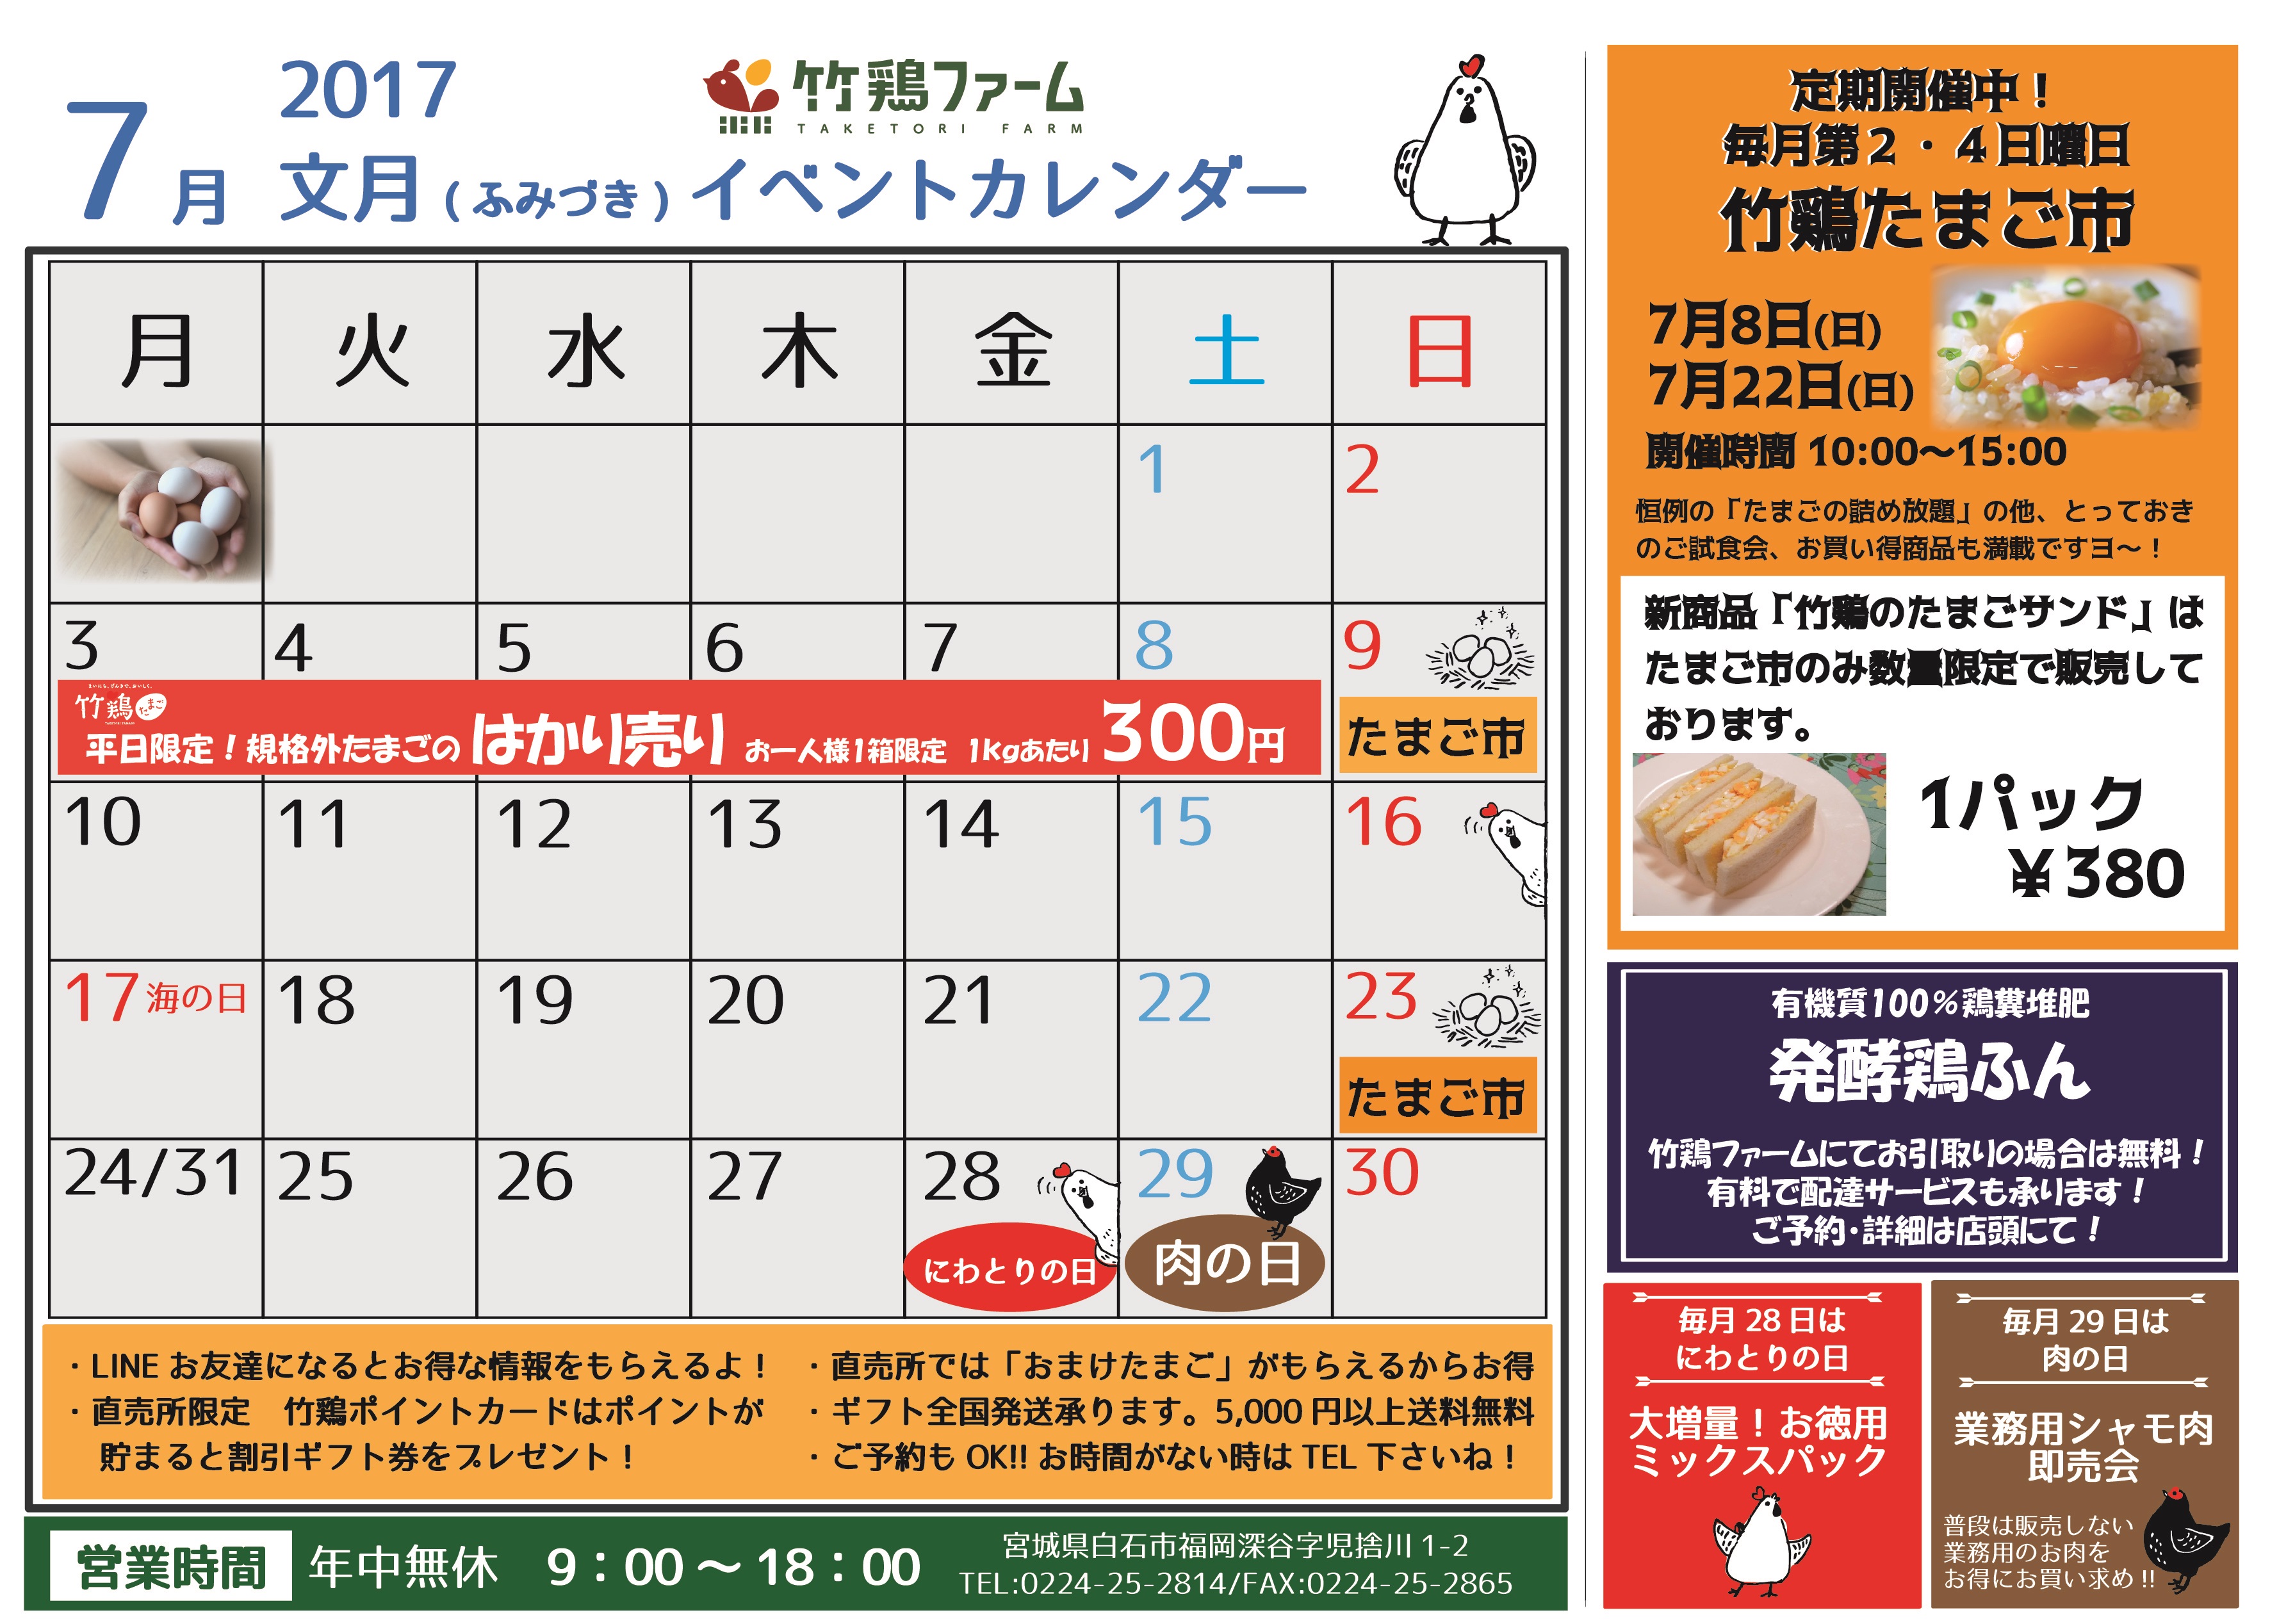 7月 2017 竹鶏ファーム